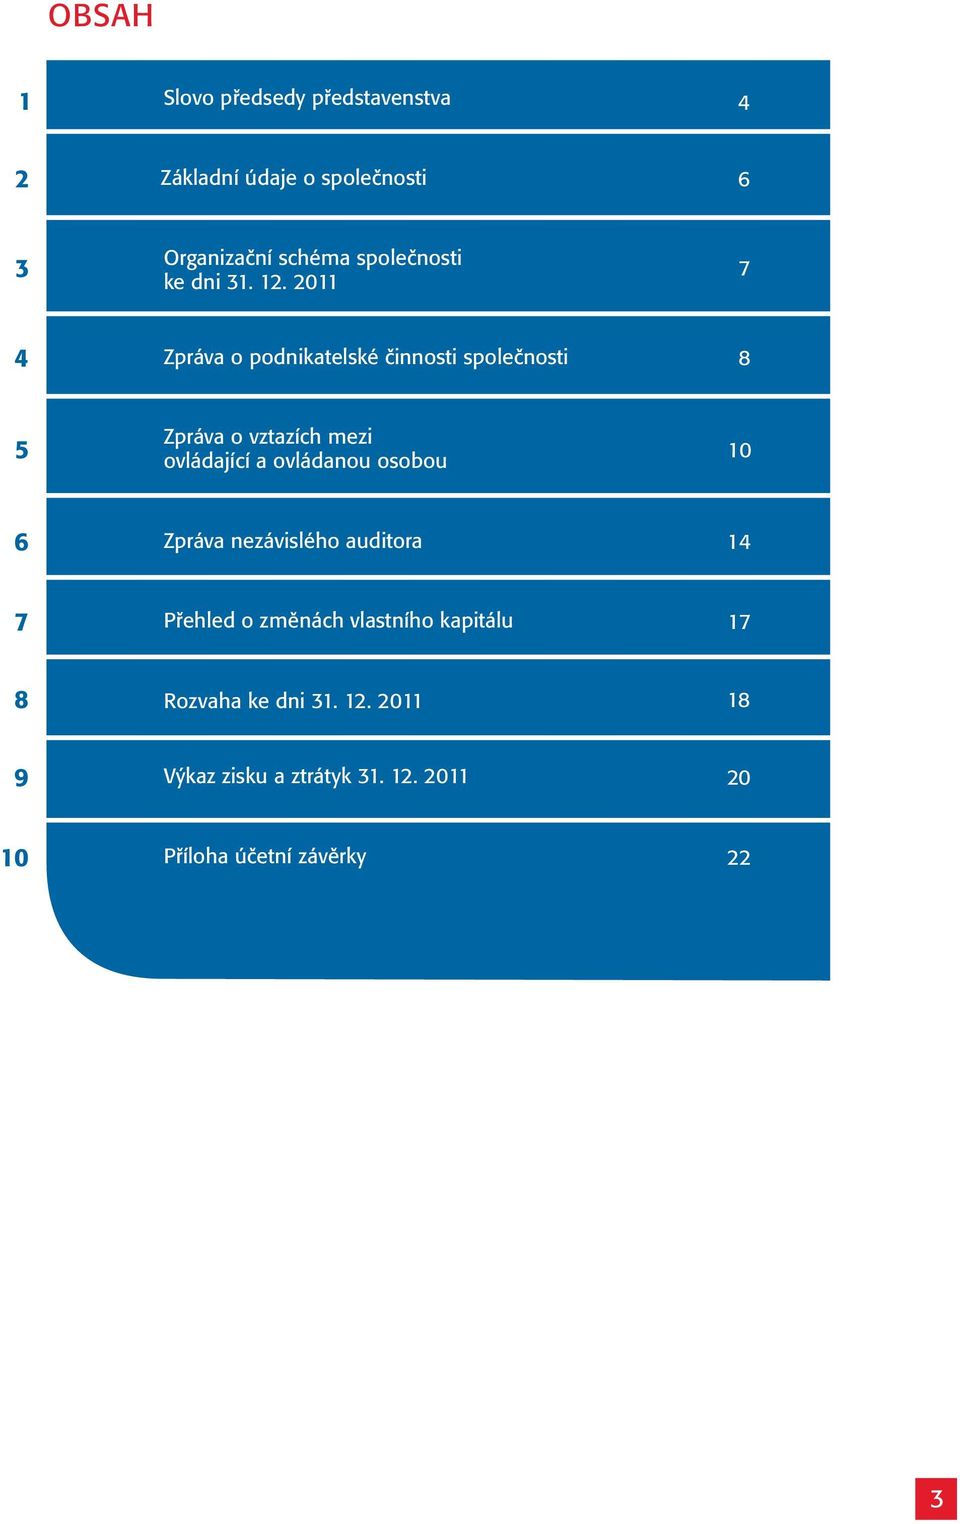 2011 7 4 Zpráva o podnikatelské činnosti společnosti 8 5 Zpráva o vztazích mezi ovládající a ovládanou